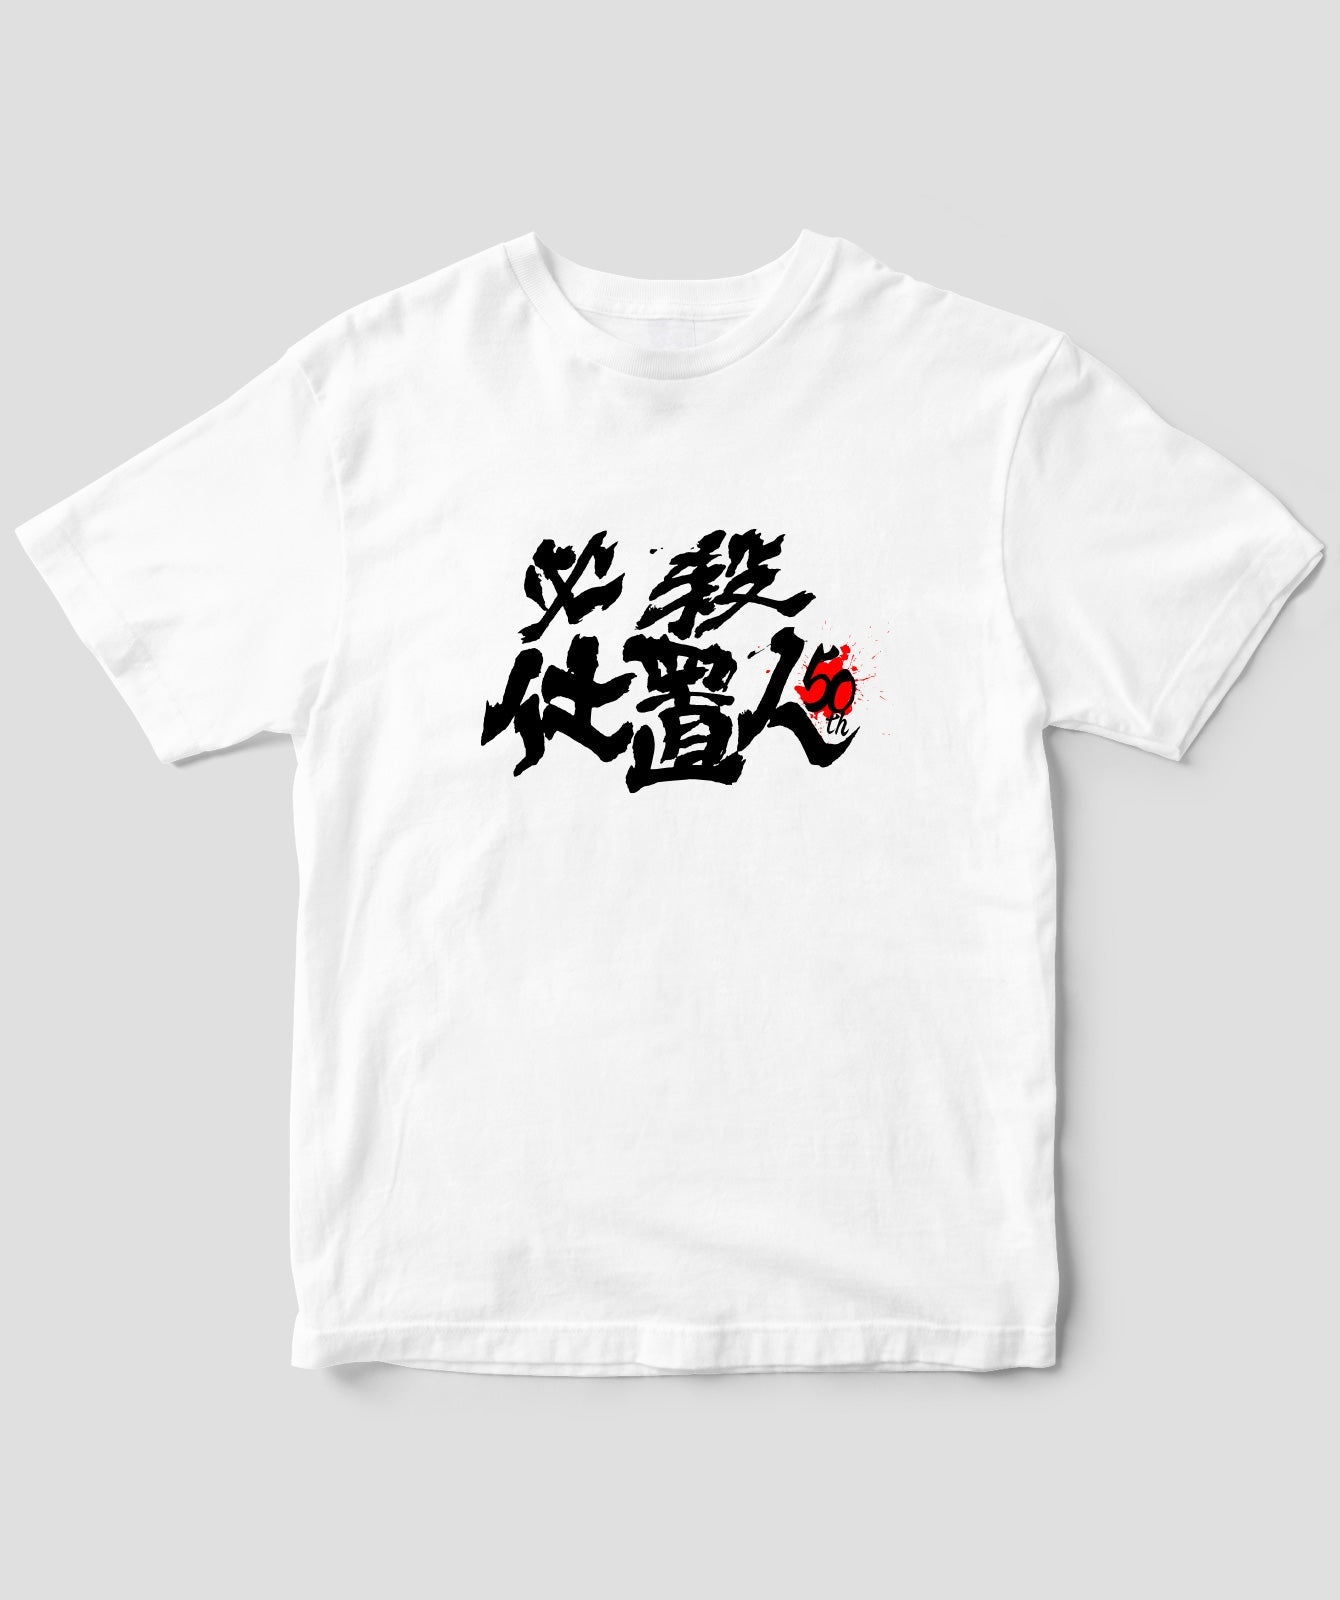 『必殺仕置人』50周年記念Tシャツ 表ver.